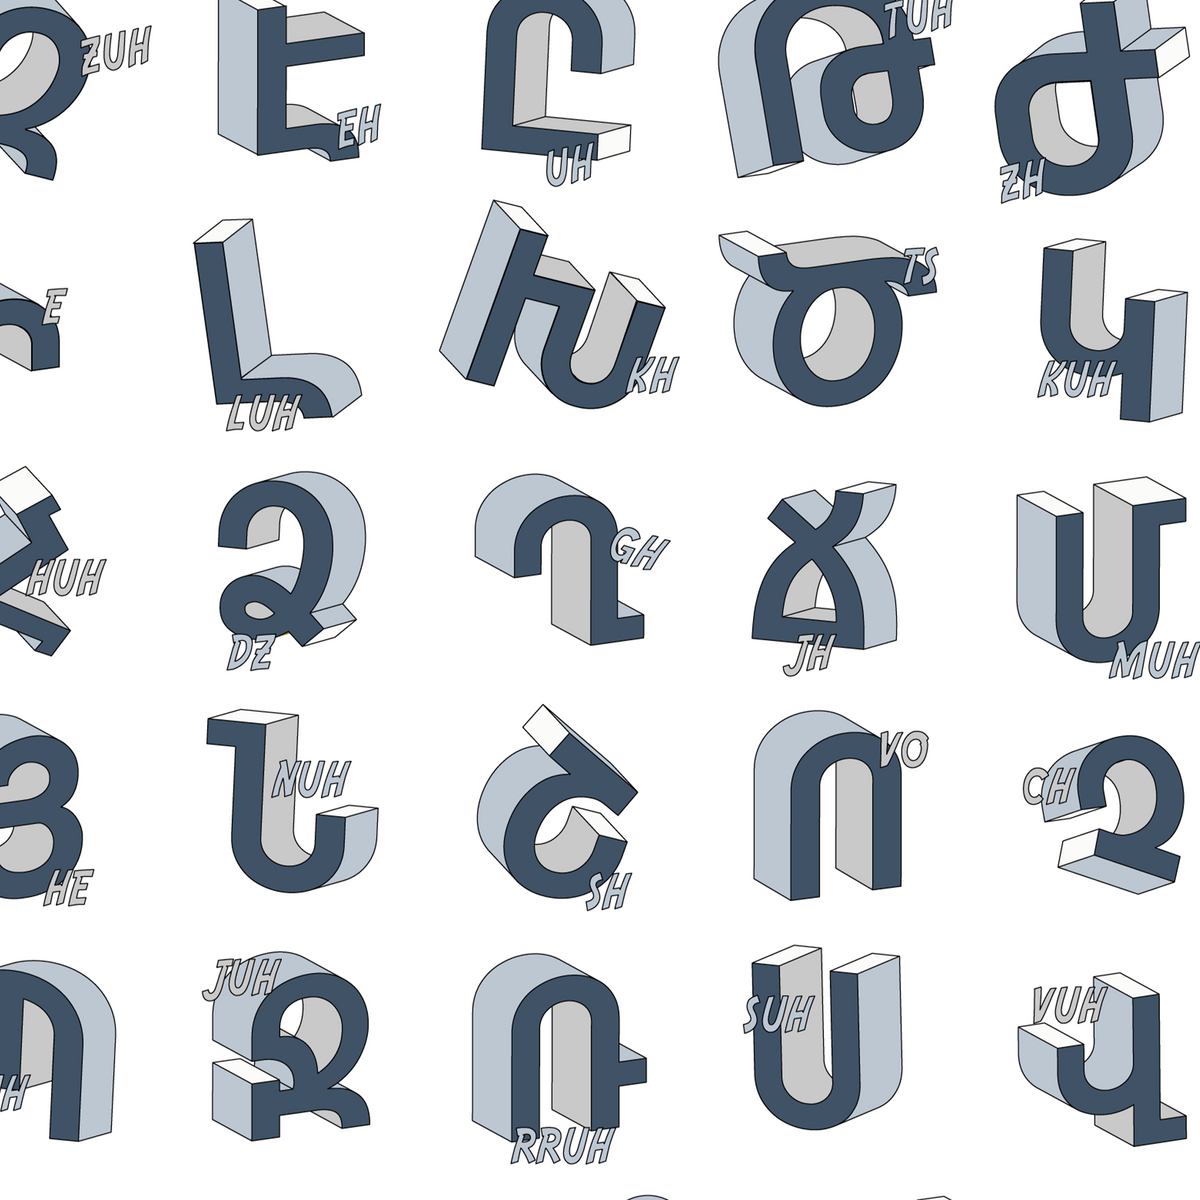 Taguhi - Armenian Alphabet with Pronunciations – arpaandryan